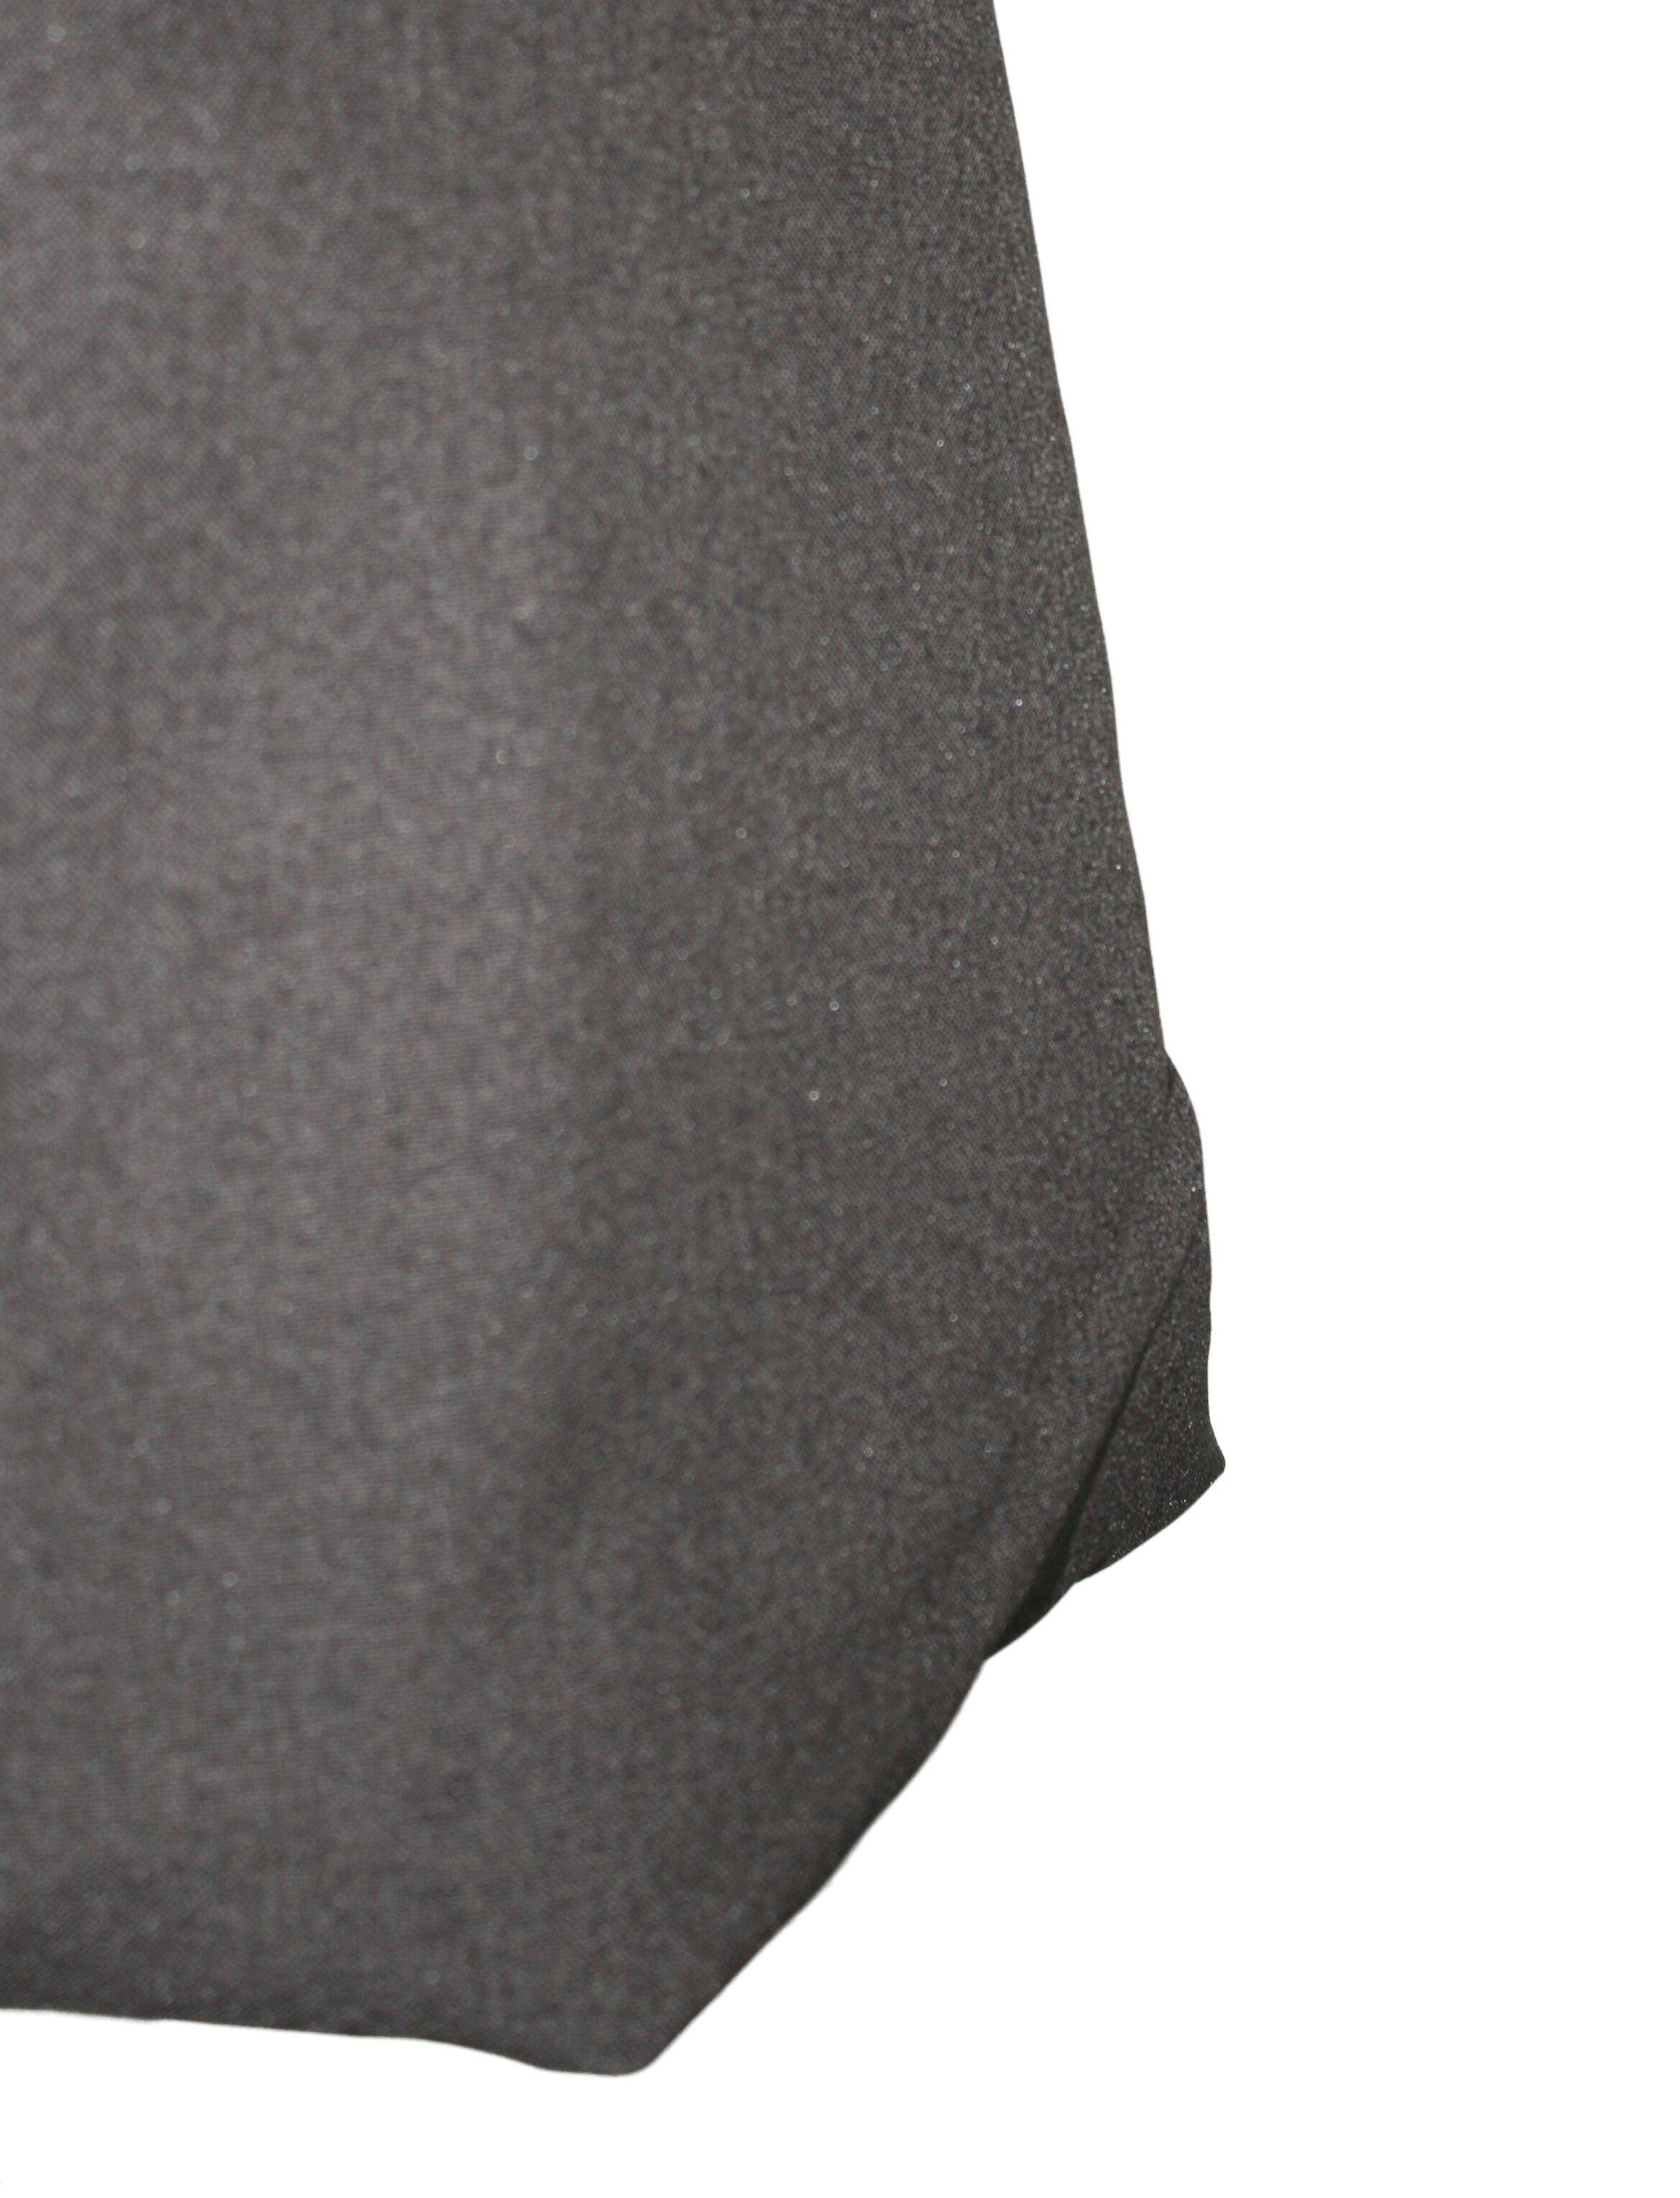 Ballonrock Ecru meliert Grau 65cm Grau Bund dunkle Schwarz Braun elastischer design